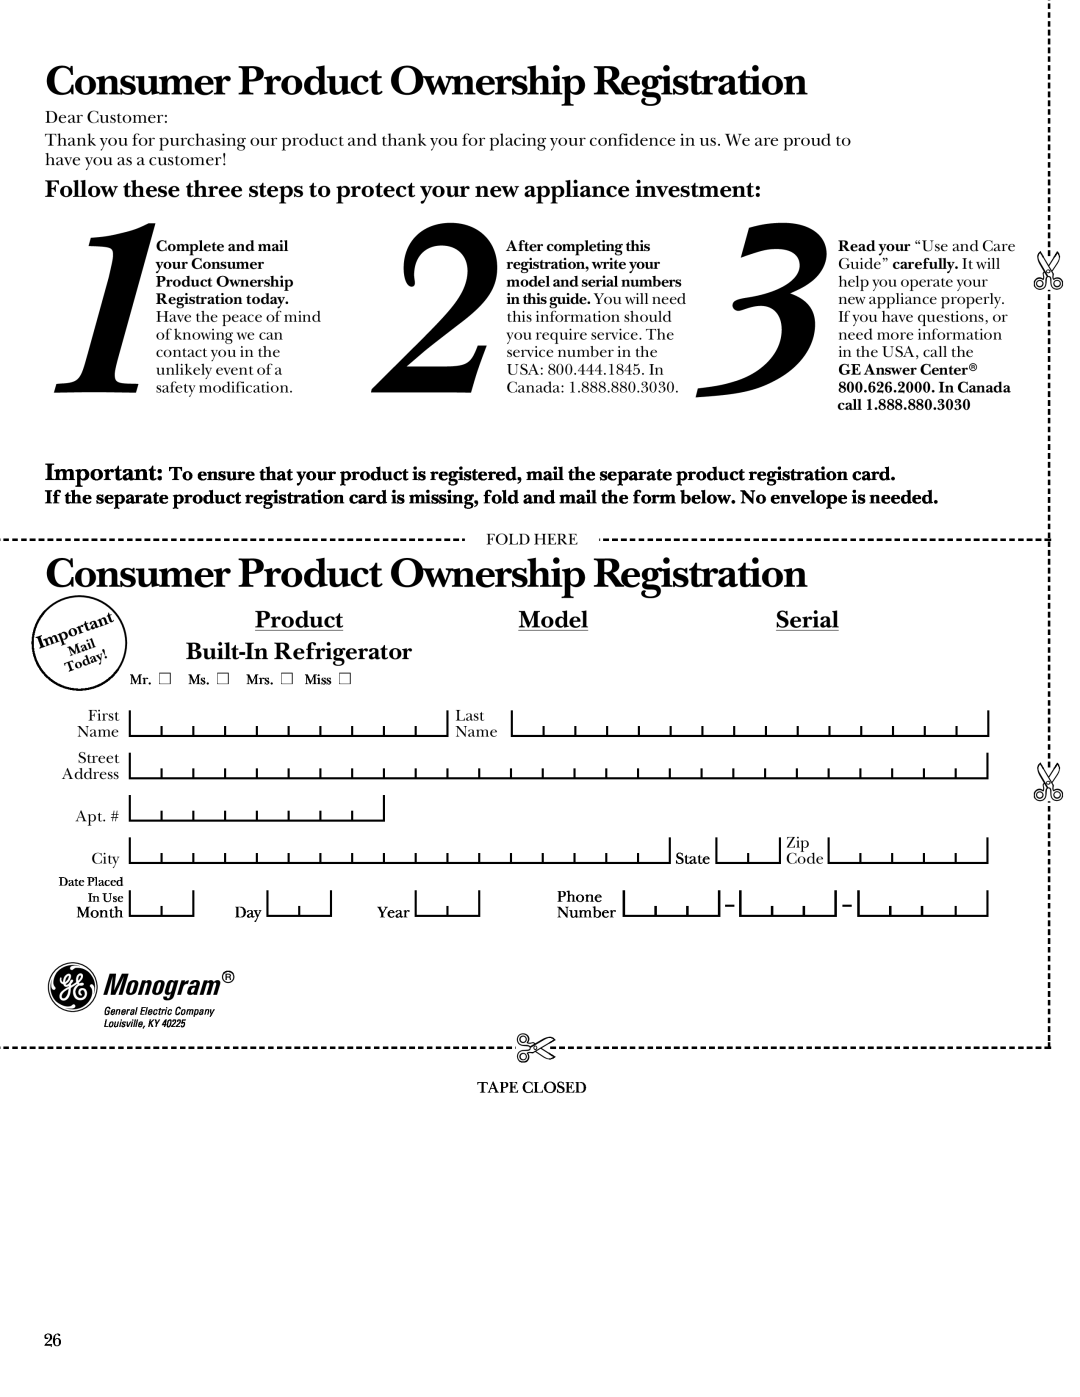 GE Monogram 48 Built-In Refrigerators manual Consumer Product Ownership Registration, Monogram, Model, Serial 